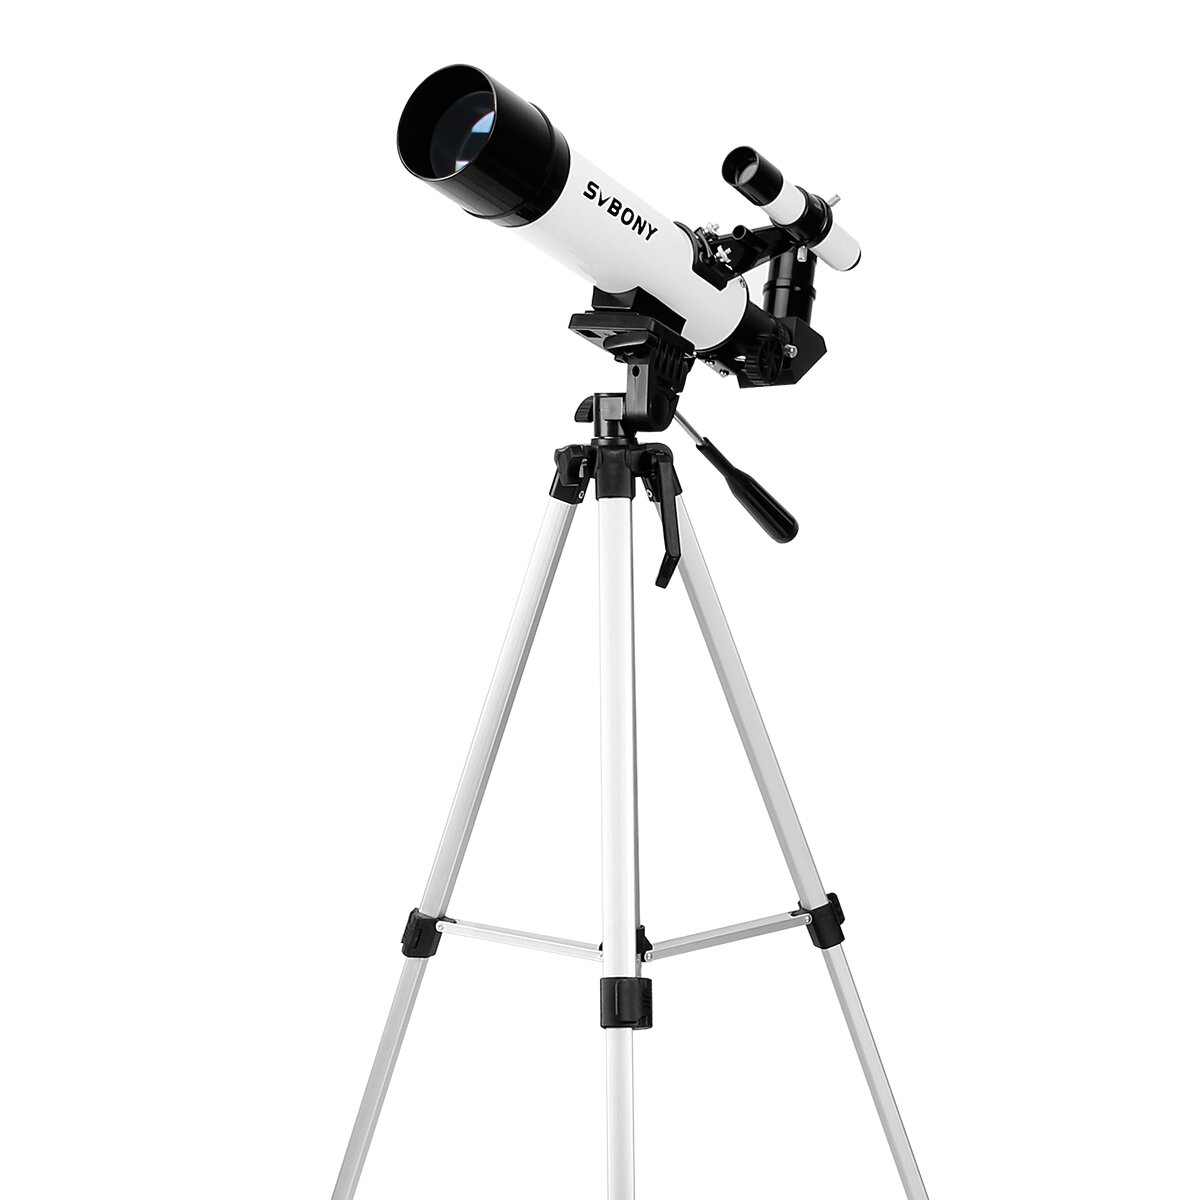 Astronomische telescoop SVBONY SV25 met 3X Barlow-lens, optische vogelzoeker en monoculair met statief